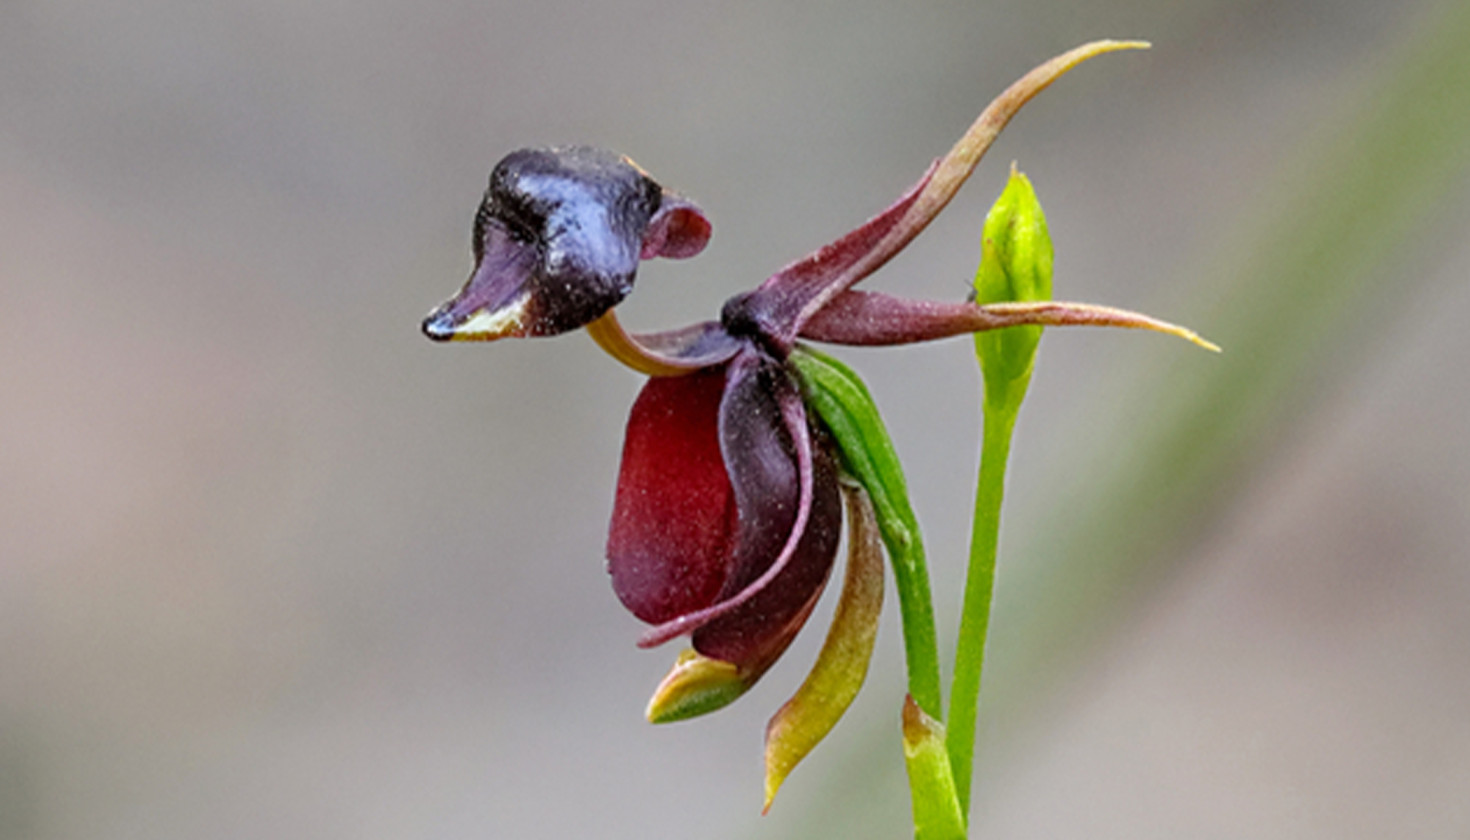  Flying Duck Orchid (Caleana major) - WIERDEST FLOWER